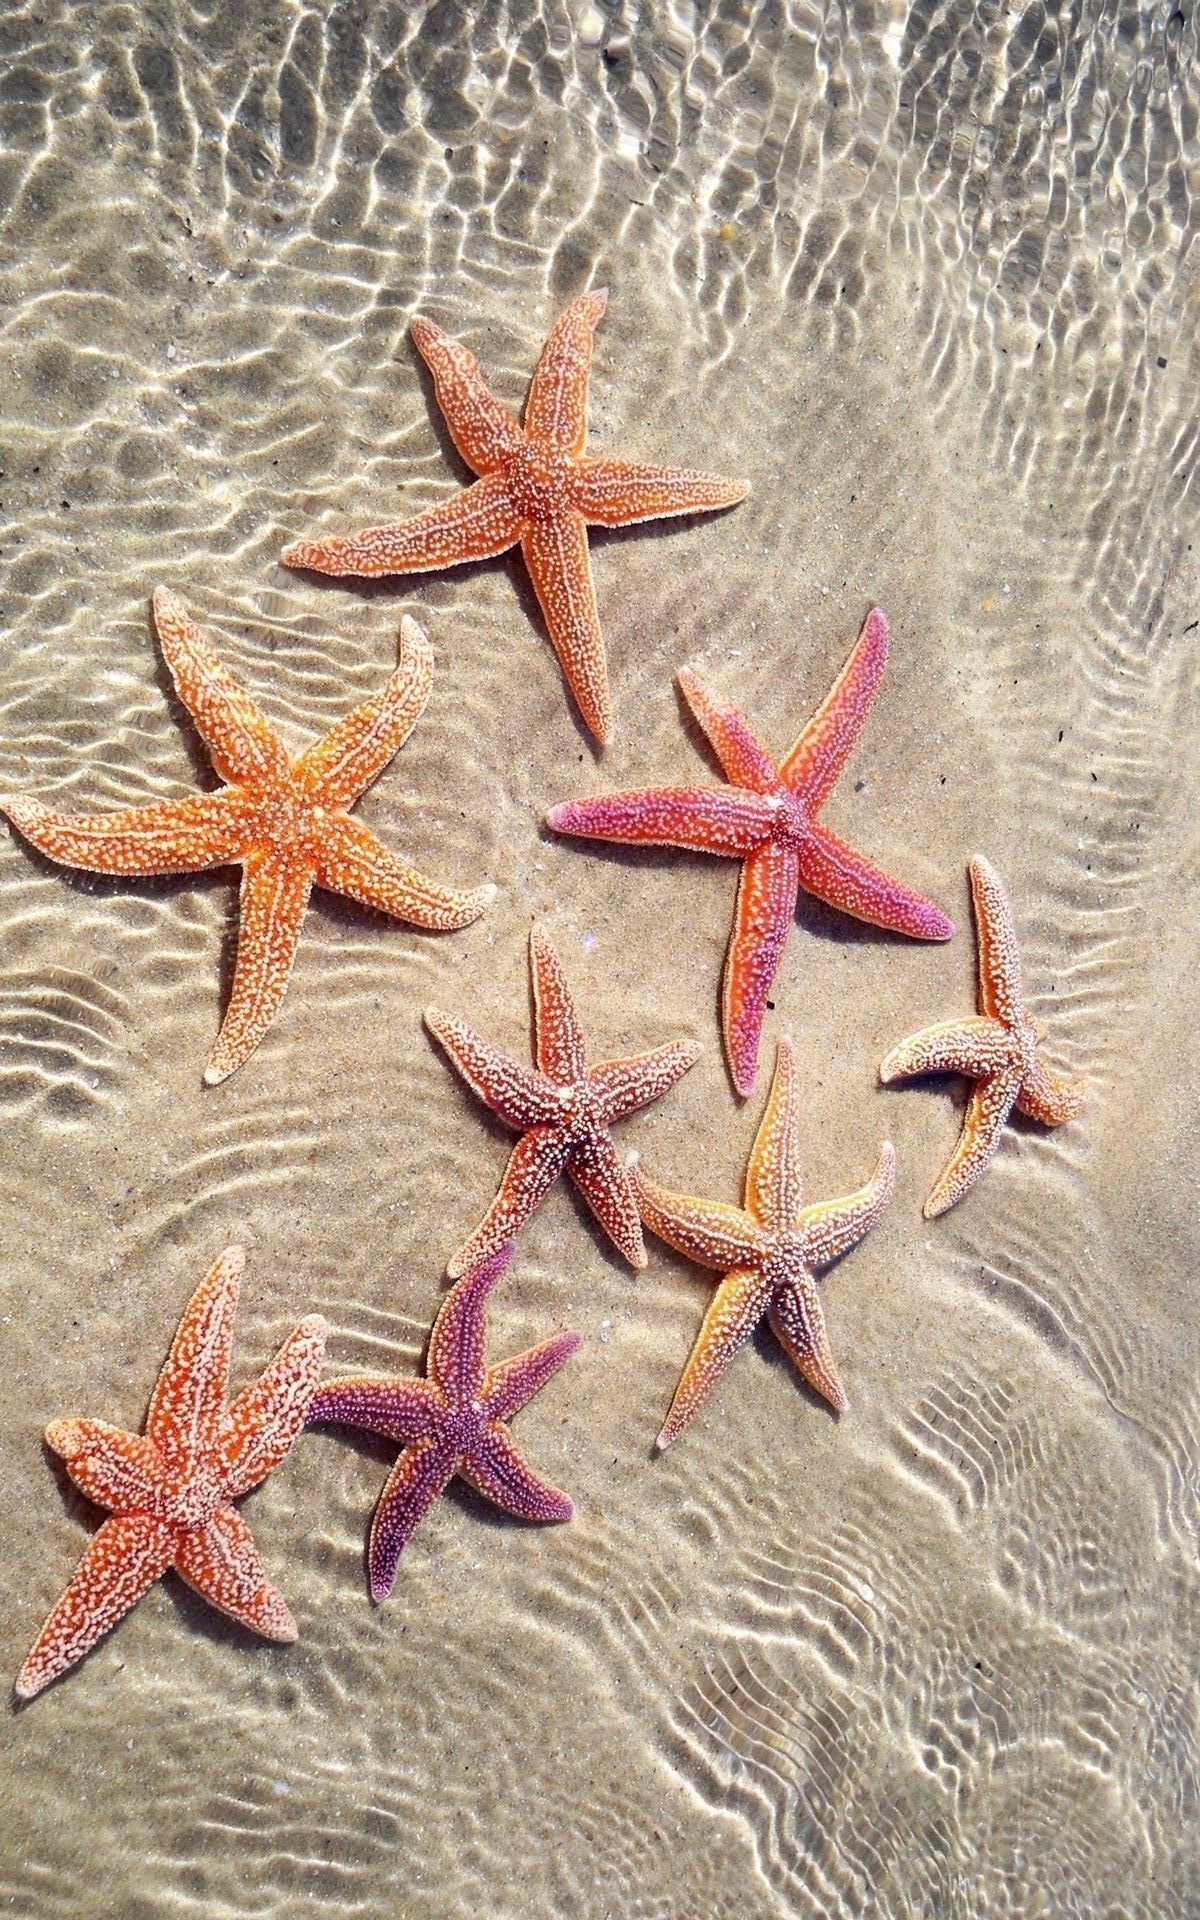 Estrellas de mar❤️. Summer wallpaper, Ocean wallpaper, Sea and ocean